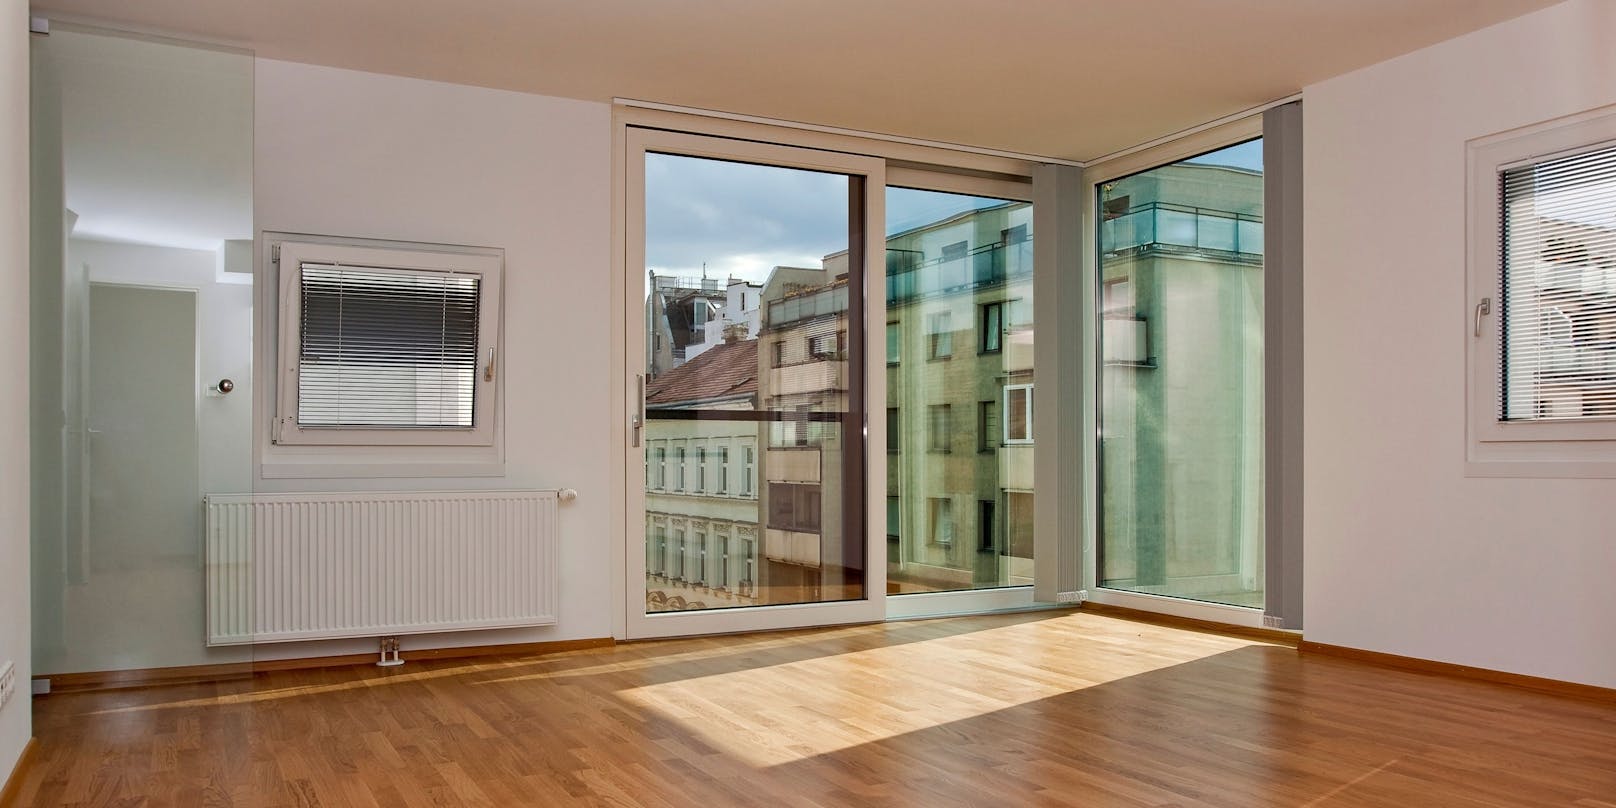 Eine 70 m2-Wohnung, erbaut 2021, kostet künftig 785 statt 604 Euro. (Symbolbild)